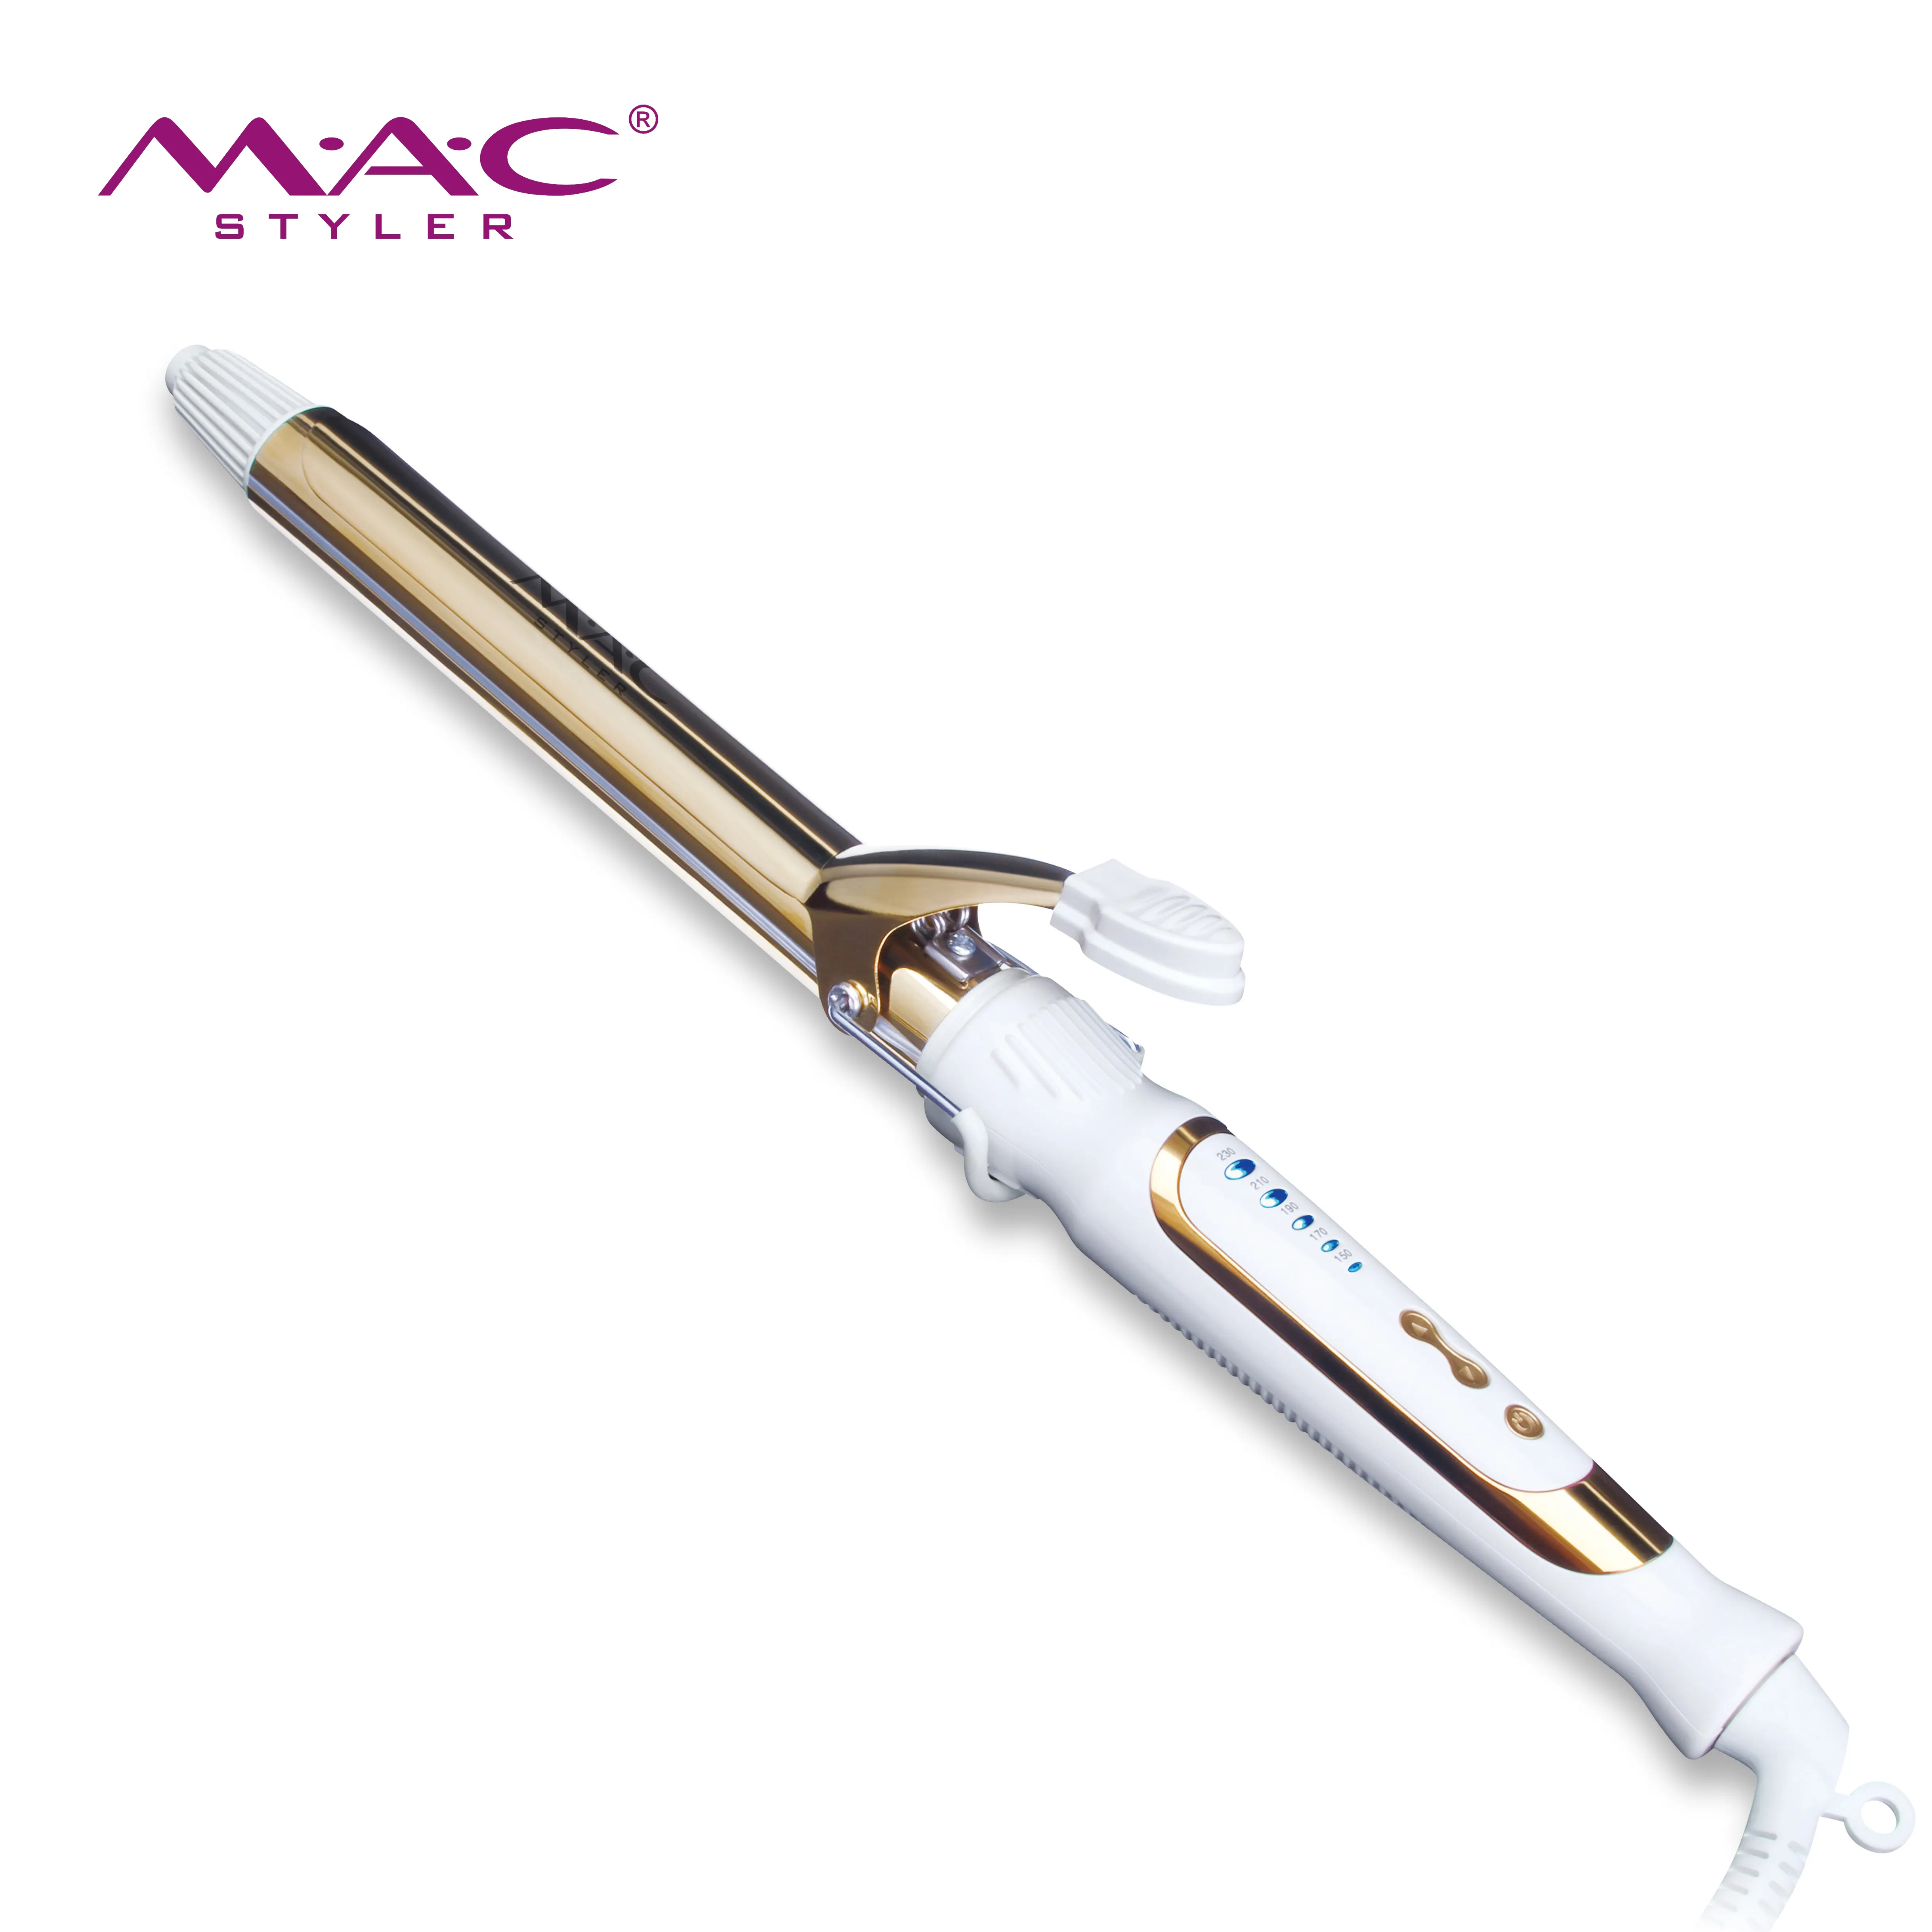 Hair Care Professional Curling iron 360 linha rotativa evitar queimaduras projetadas isolamento térmico quadro Hair Curler Machine